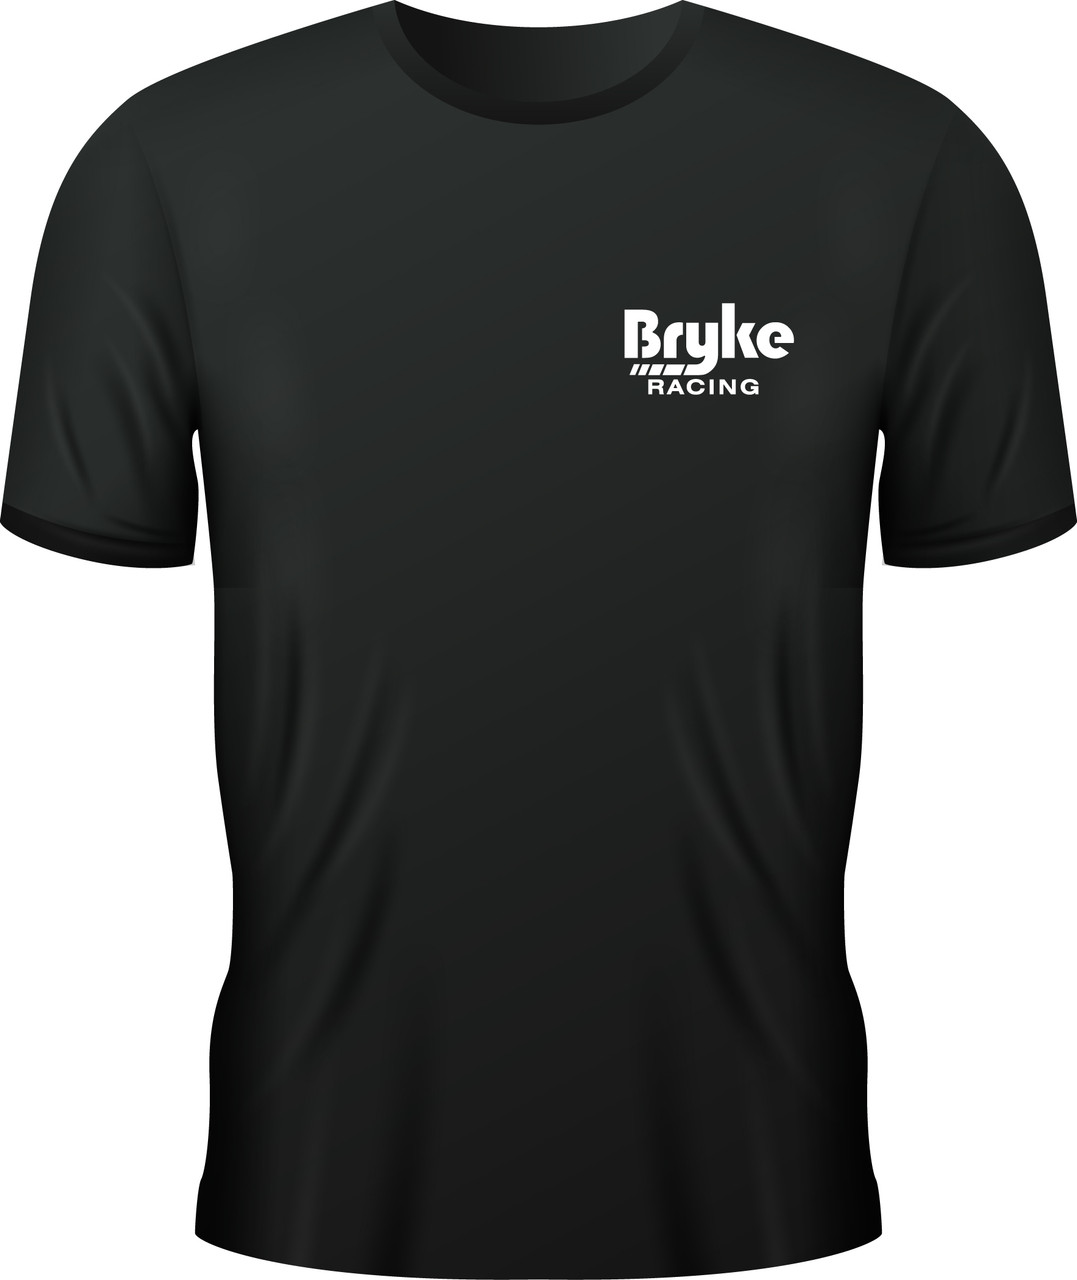 Bryke Racing Short Sleeve T-Shirt -  White Lettering